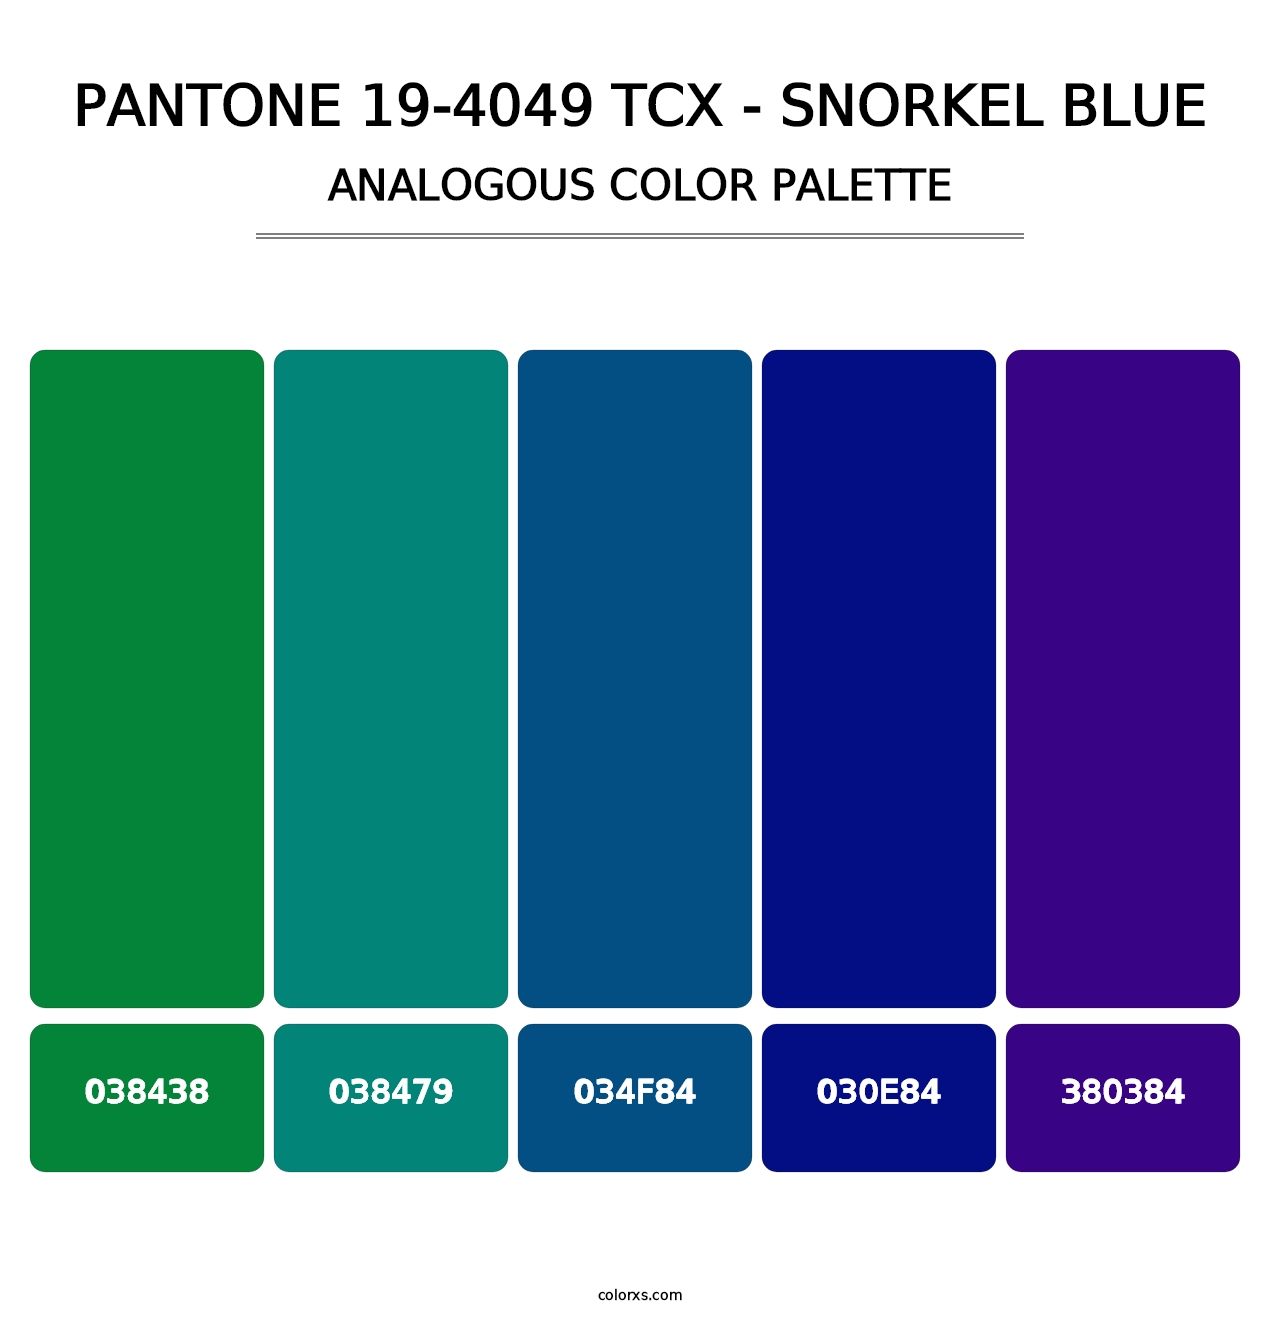 PANTONE 19-4049 TCX - Snorkel Blue - Analogous Color Palette